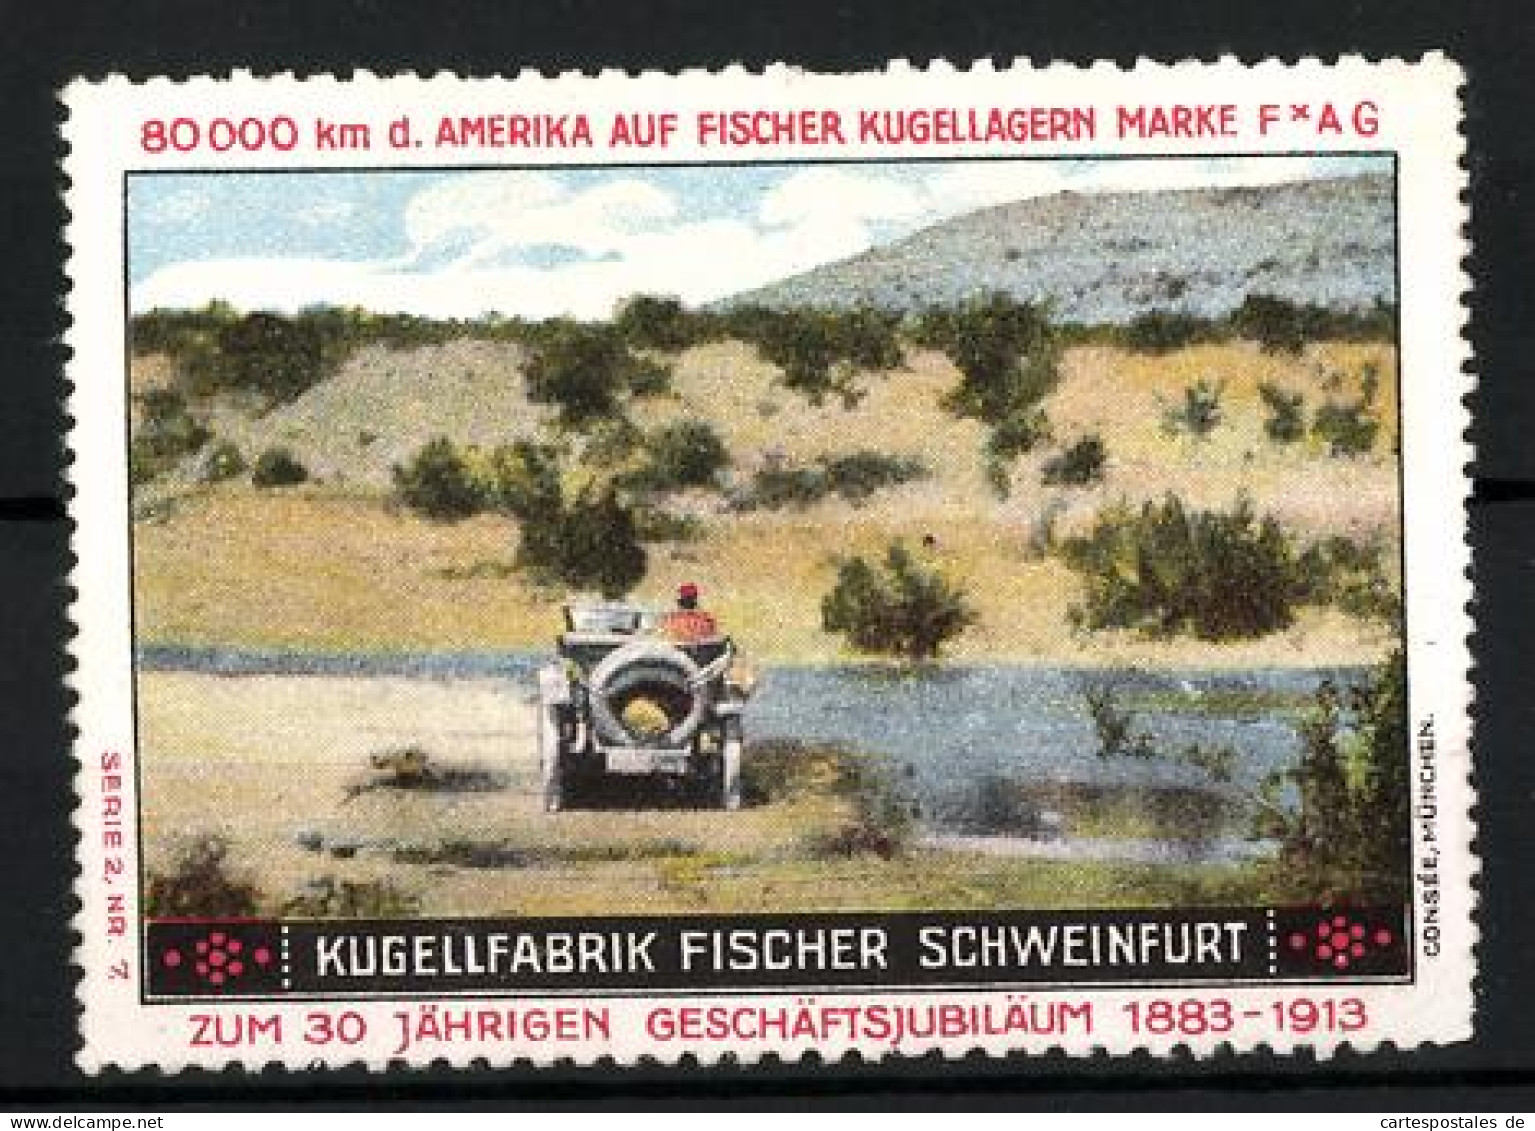 Reklamemarke Fischer Kugellager FAG, Kugellfabrik Fischer Schweinfurt, 30 Jähr. Geschäftsjubiläum 1883-1913, Auto  - Erinnophilie